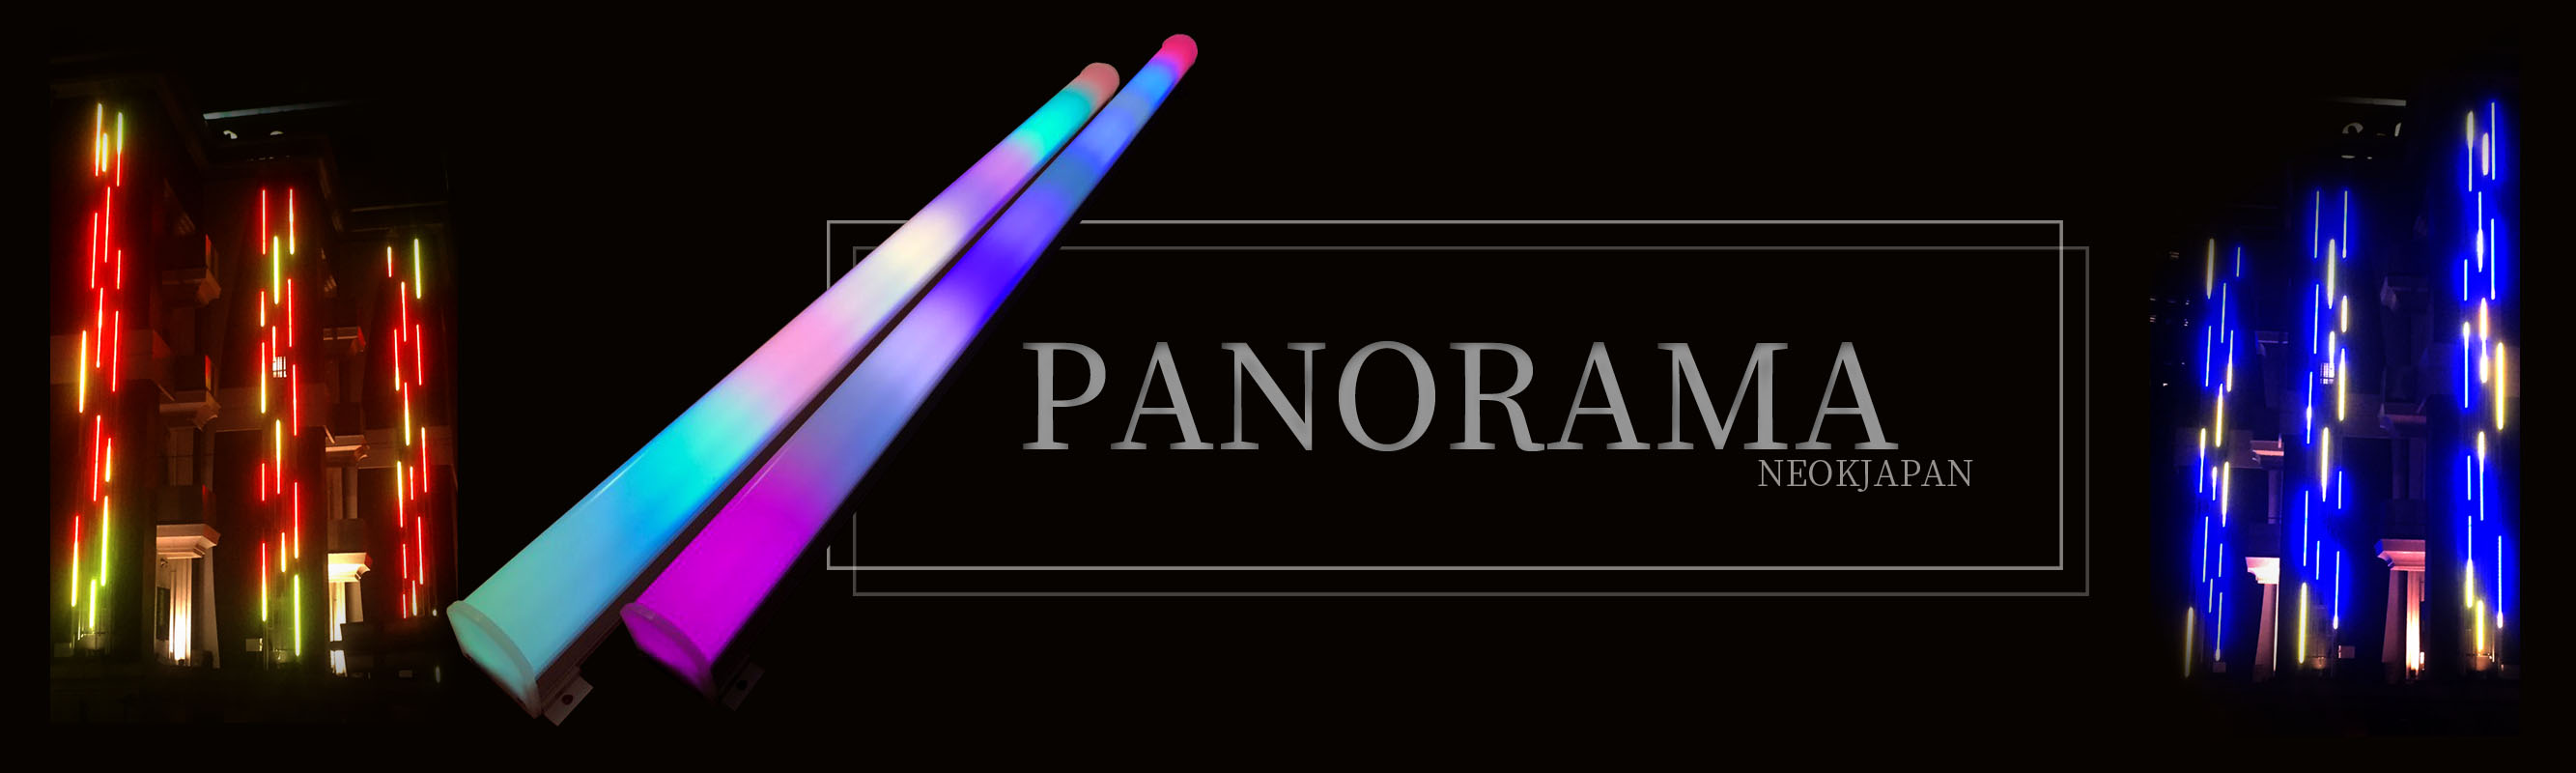 RGBパノラマ